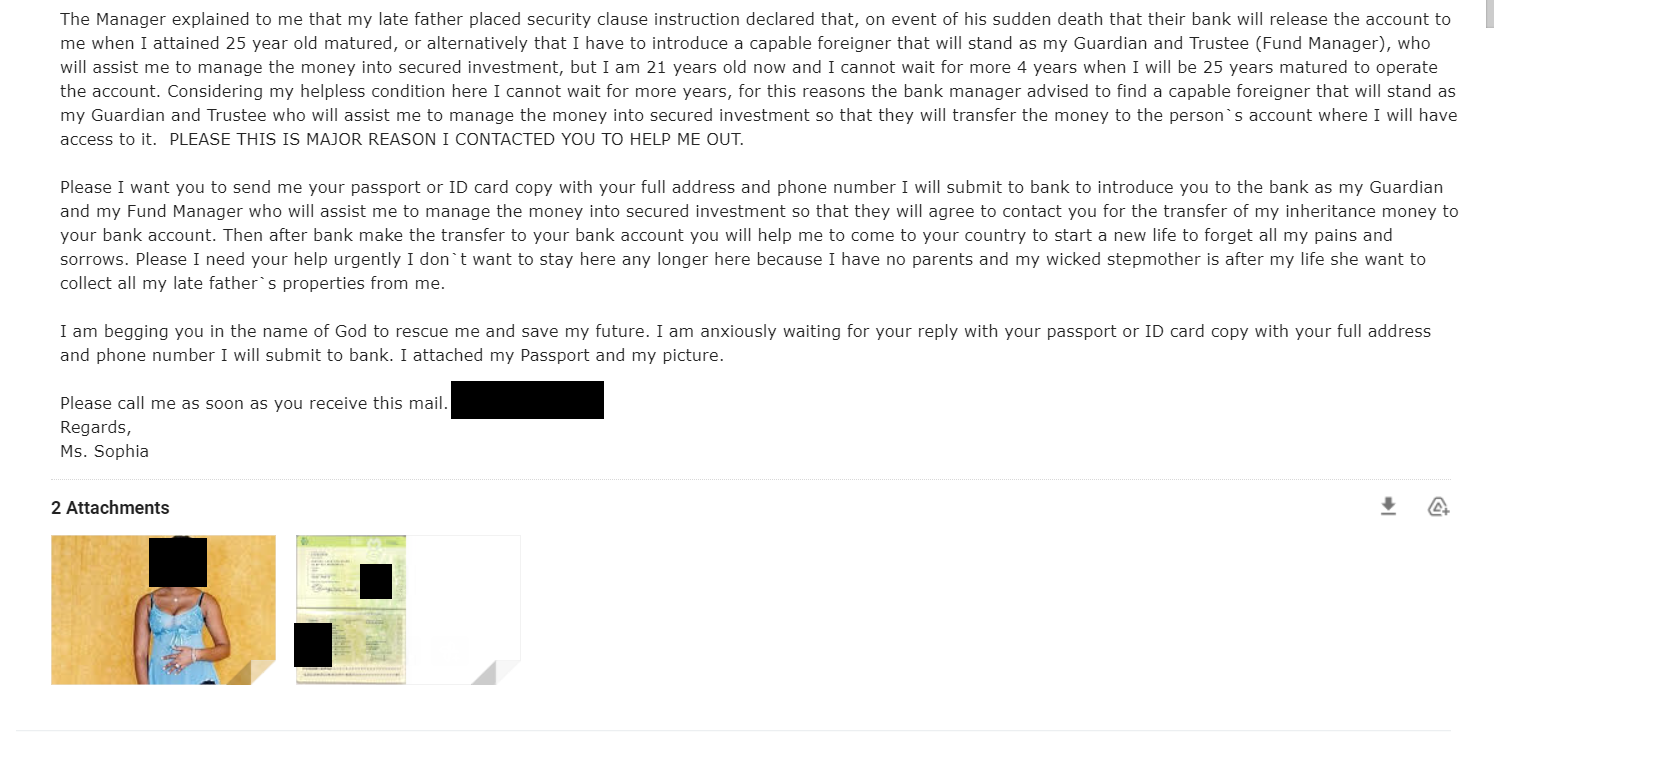 sofia 2 - Cosa è successo quando abbiamo risposto a un’e-mail di phishing?